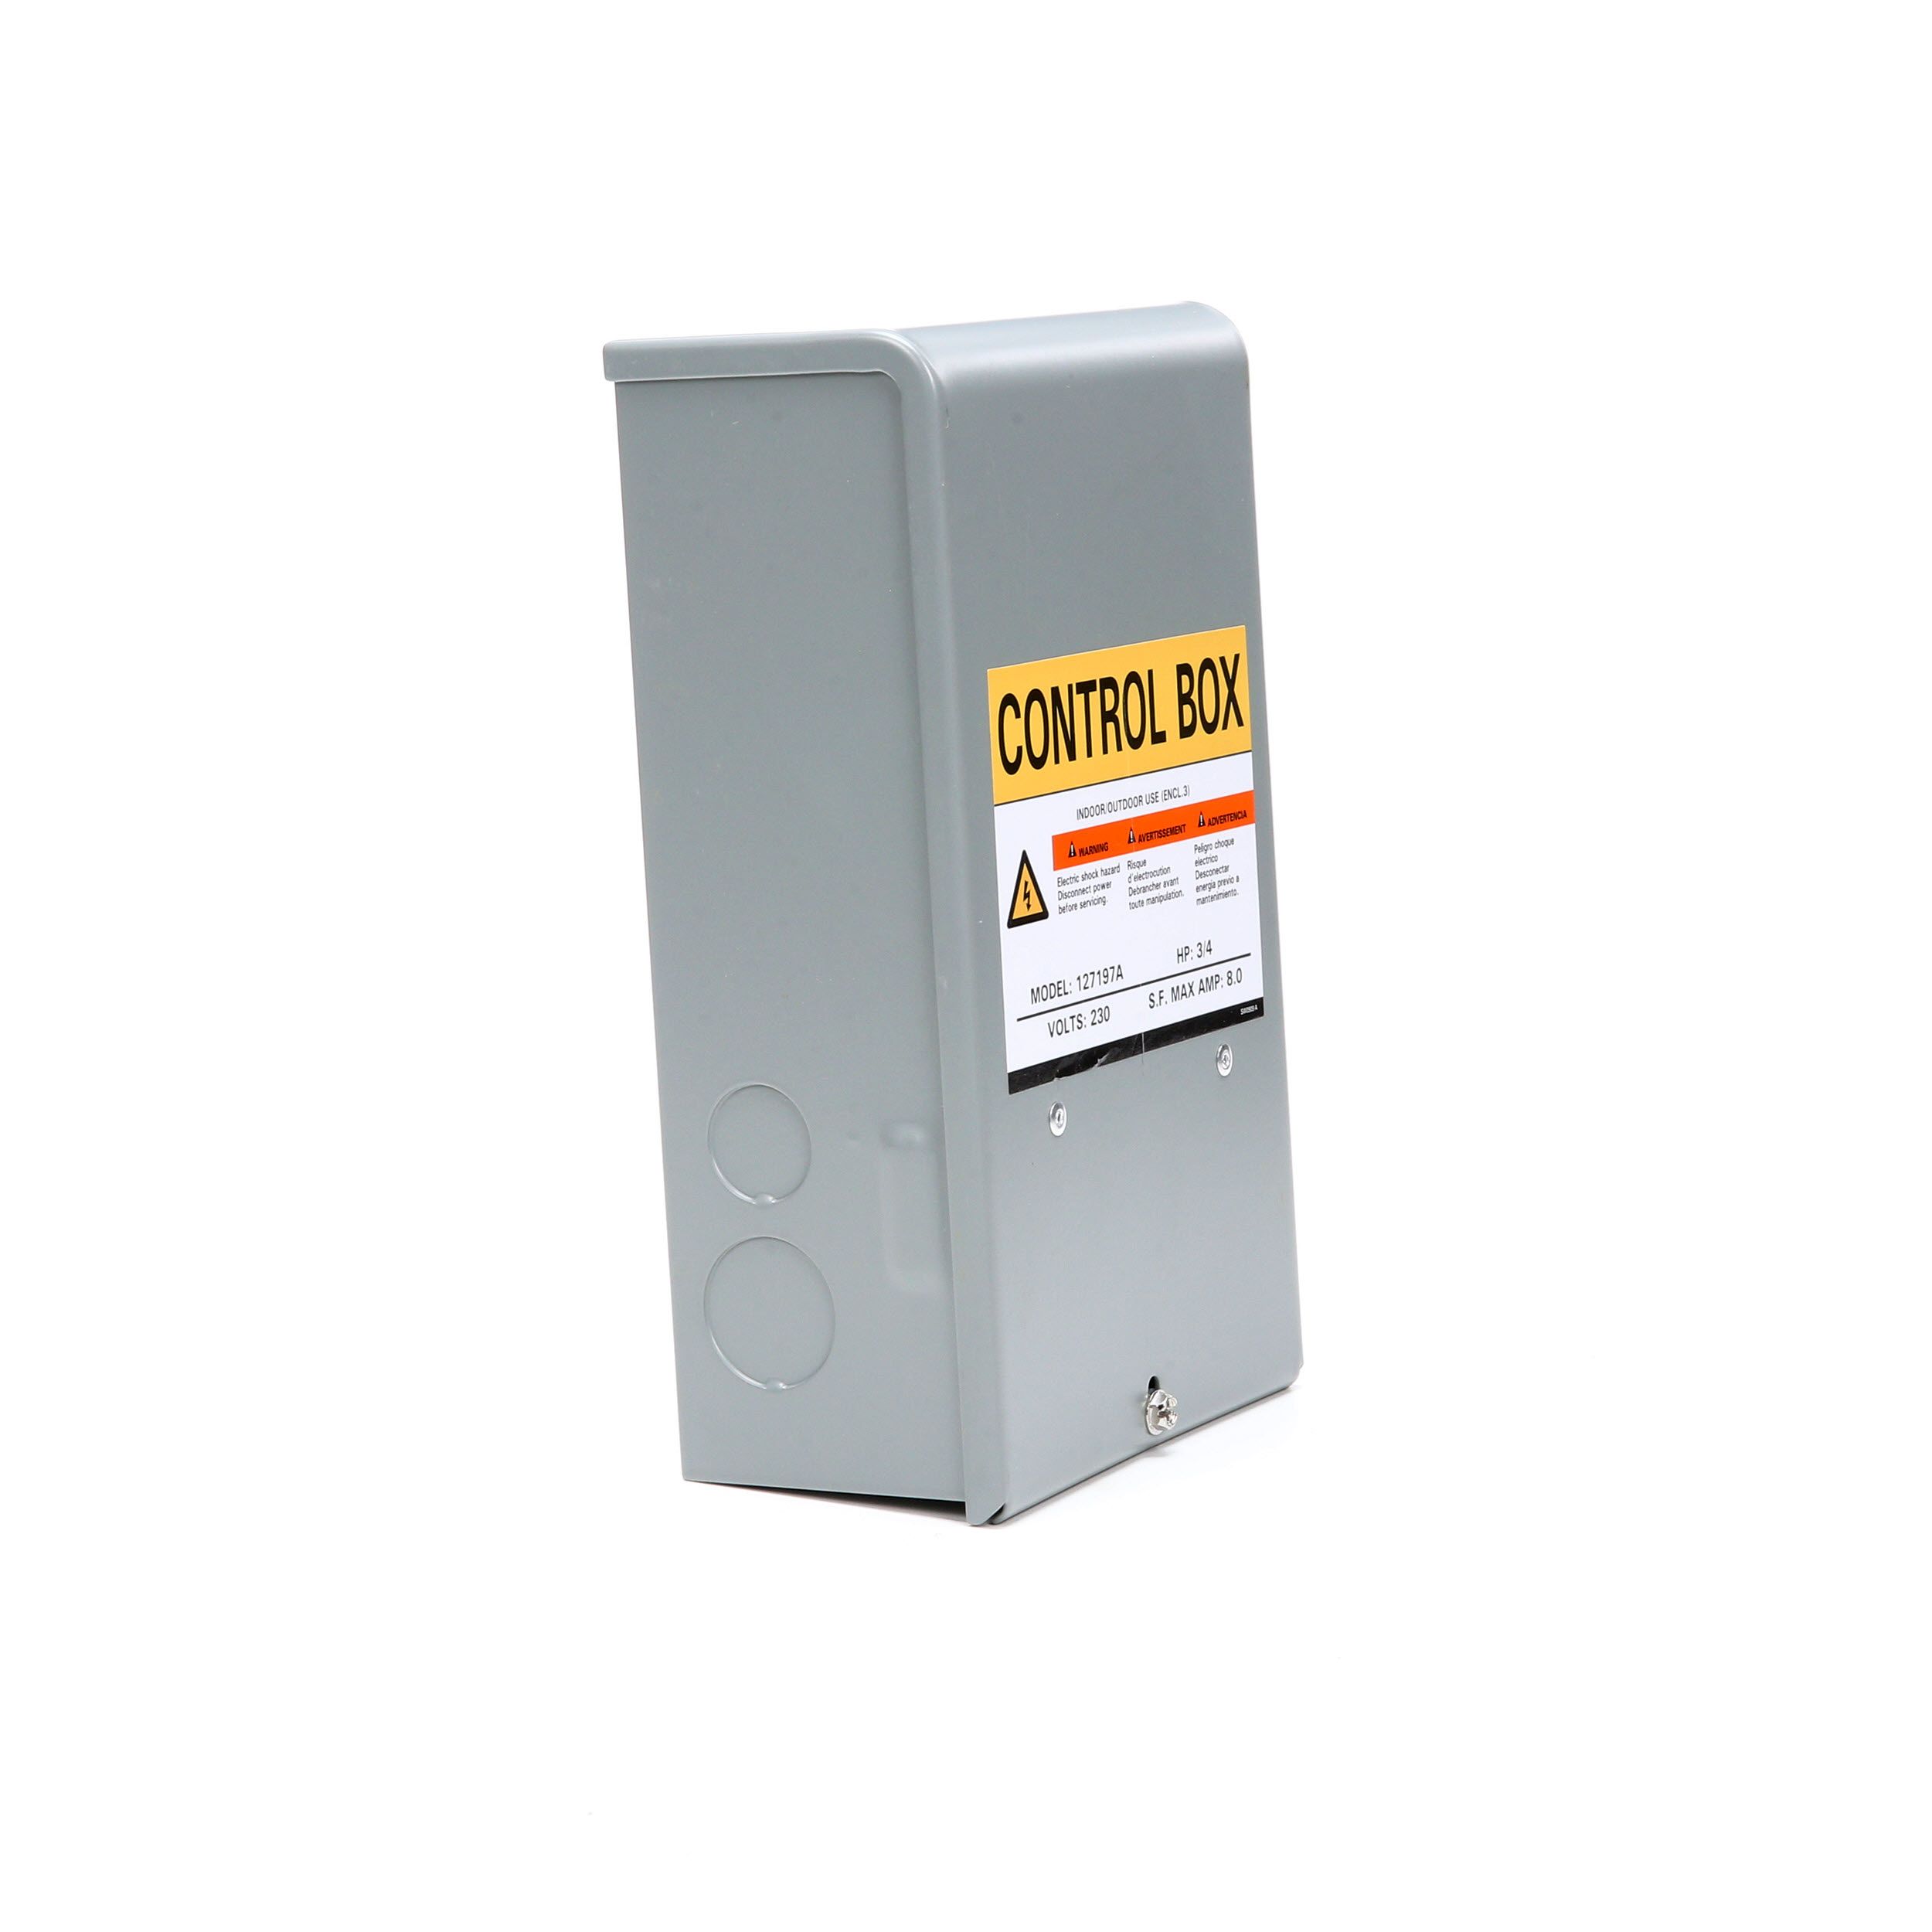 ZOELLER Well Pump Control Box 1010-2337 3/4HP 230 Volts  S.F Max Amp 8.0 NIB 